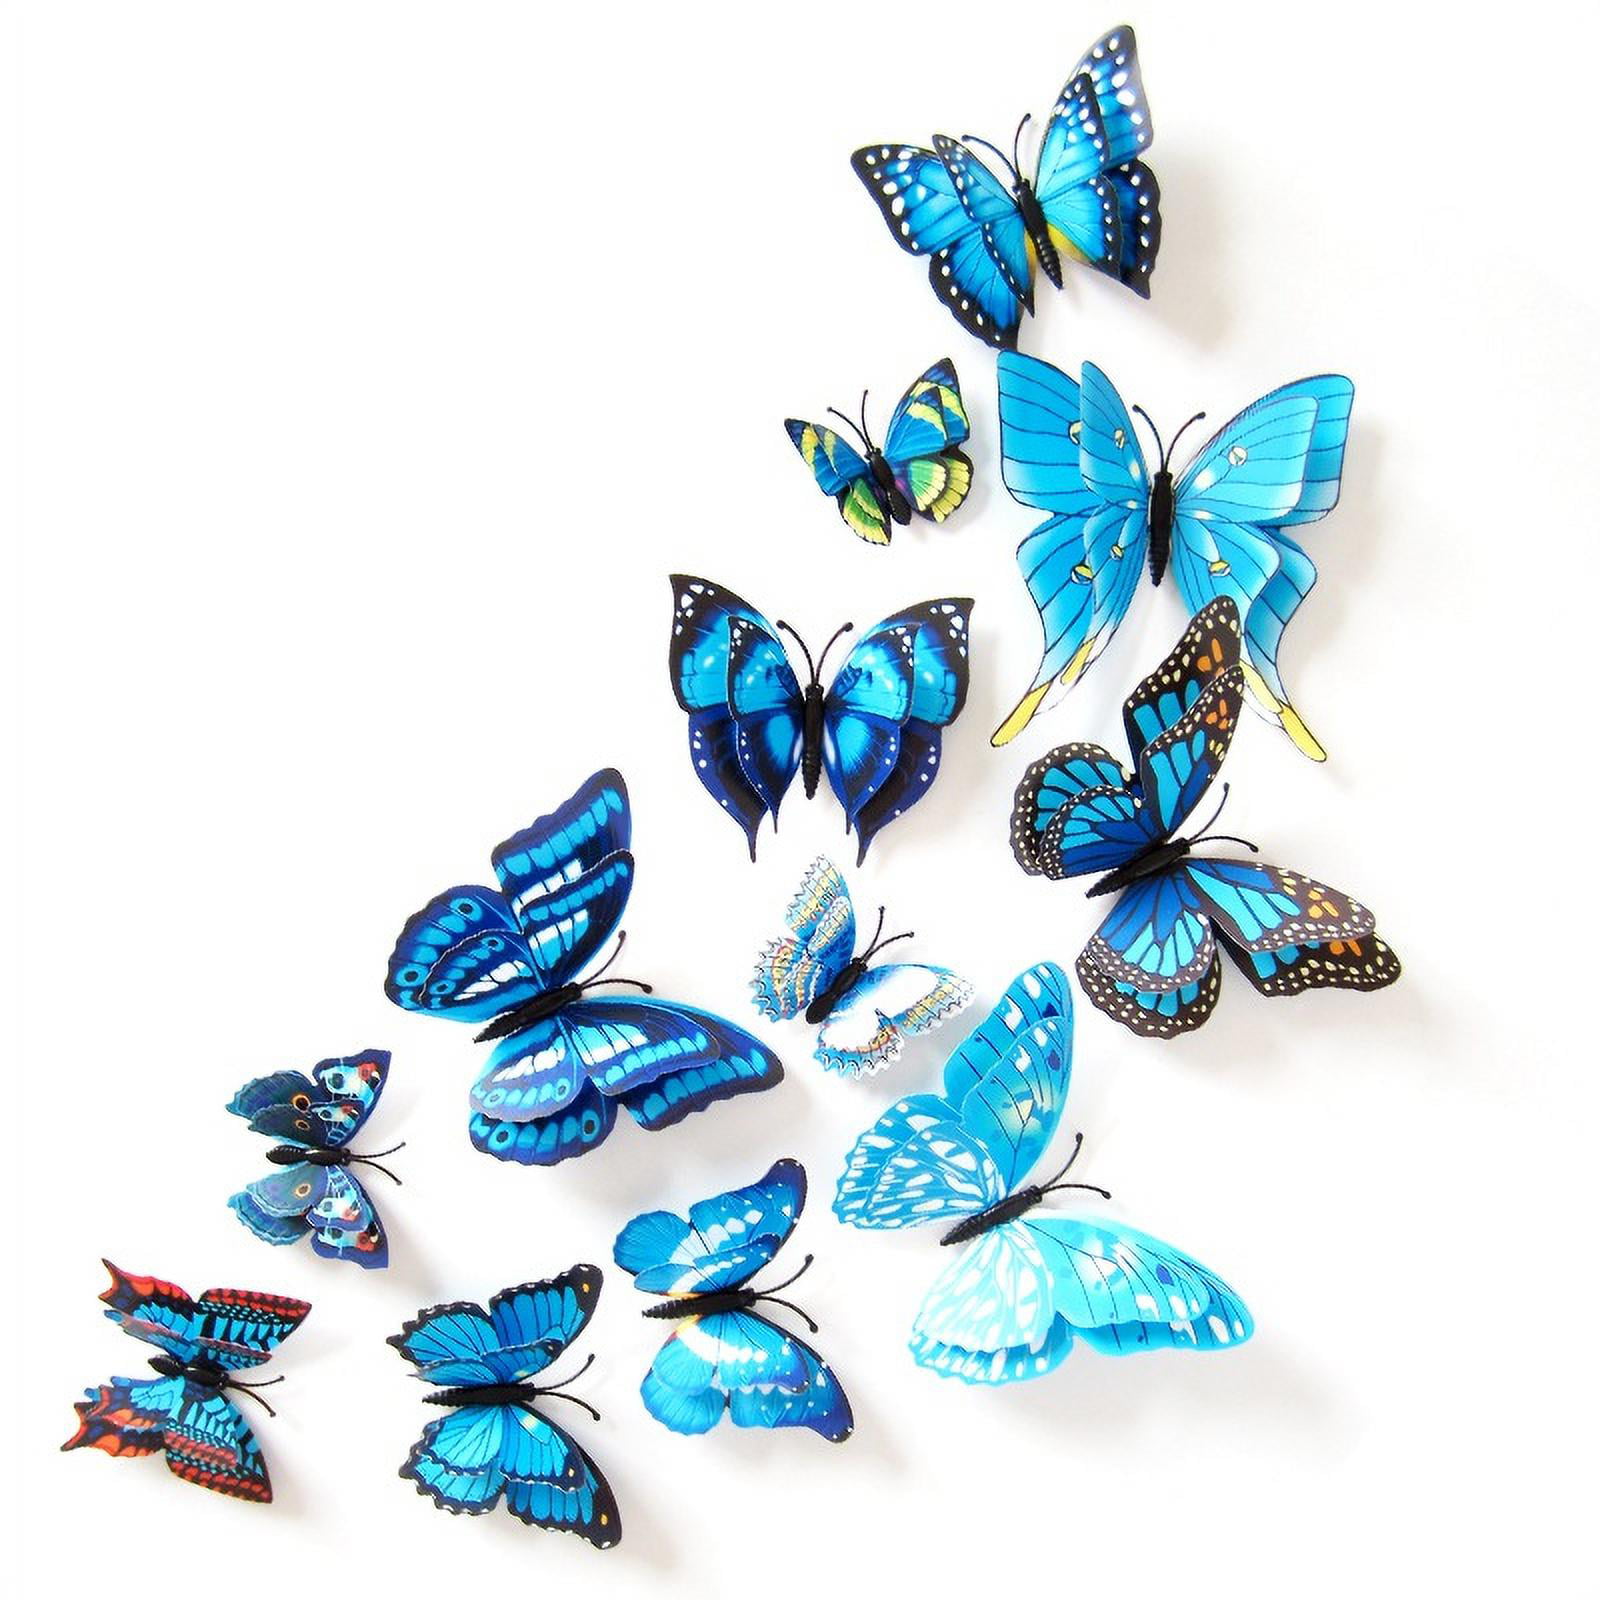 12 Pcs 3D Butterfly Wall Stickers Crafts Butterflies DIY Art Decor ...